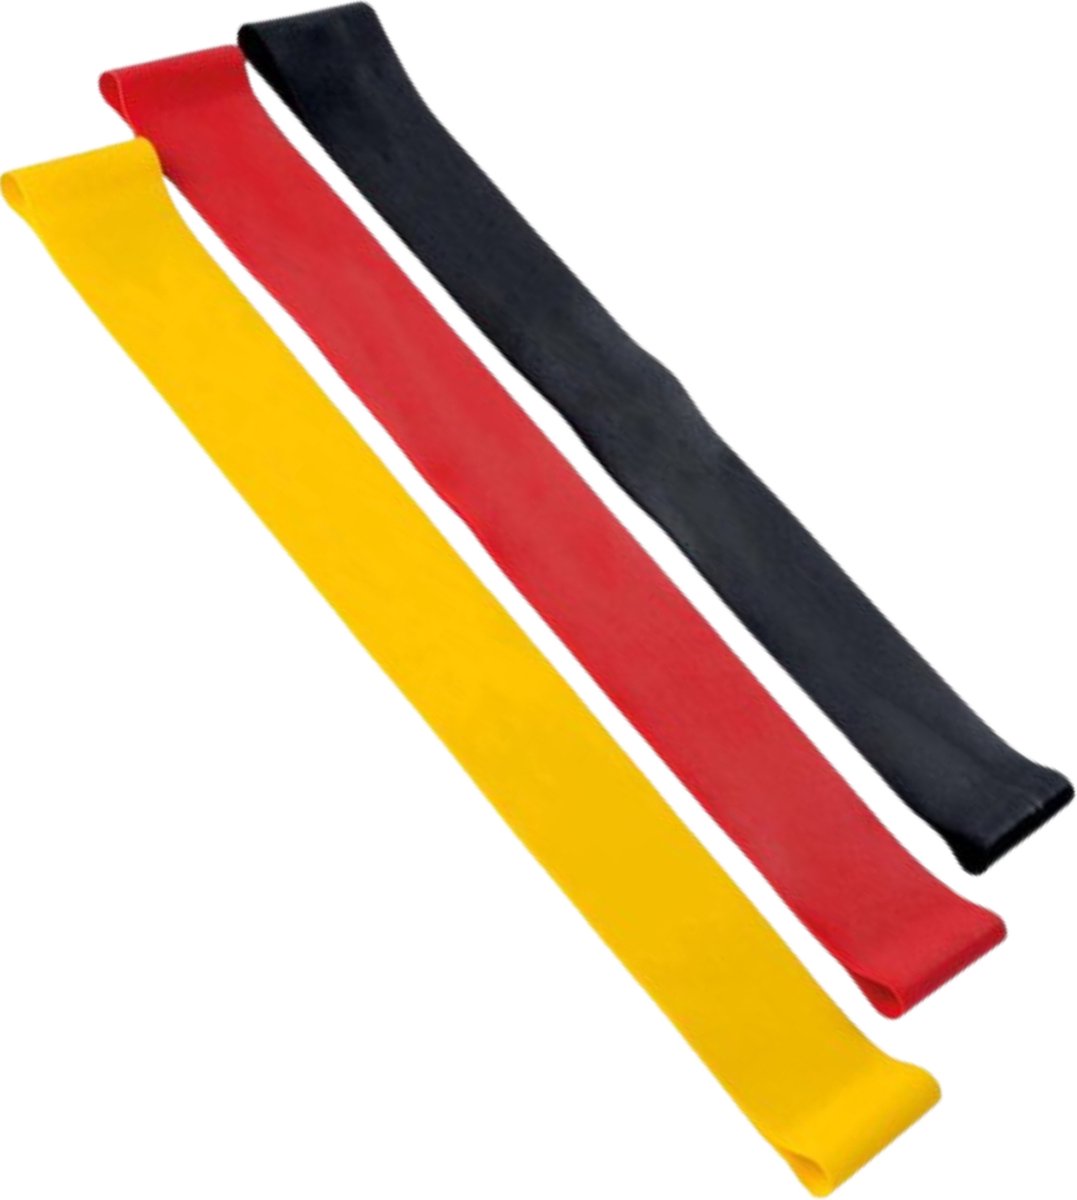 Usefull4life - SALE - Weerstandsbanden set - 3 stuks - fitness - fitness elastieken - fitness banden - kracht bestendigt- geel - zwart - rood